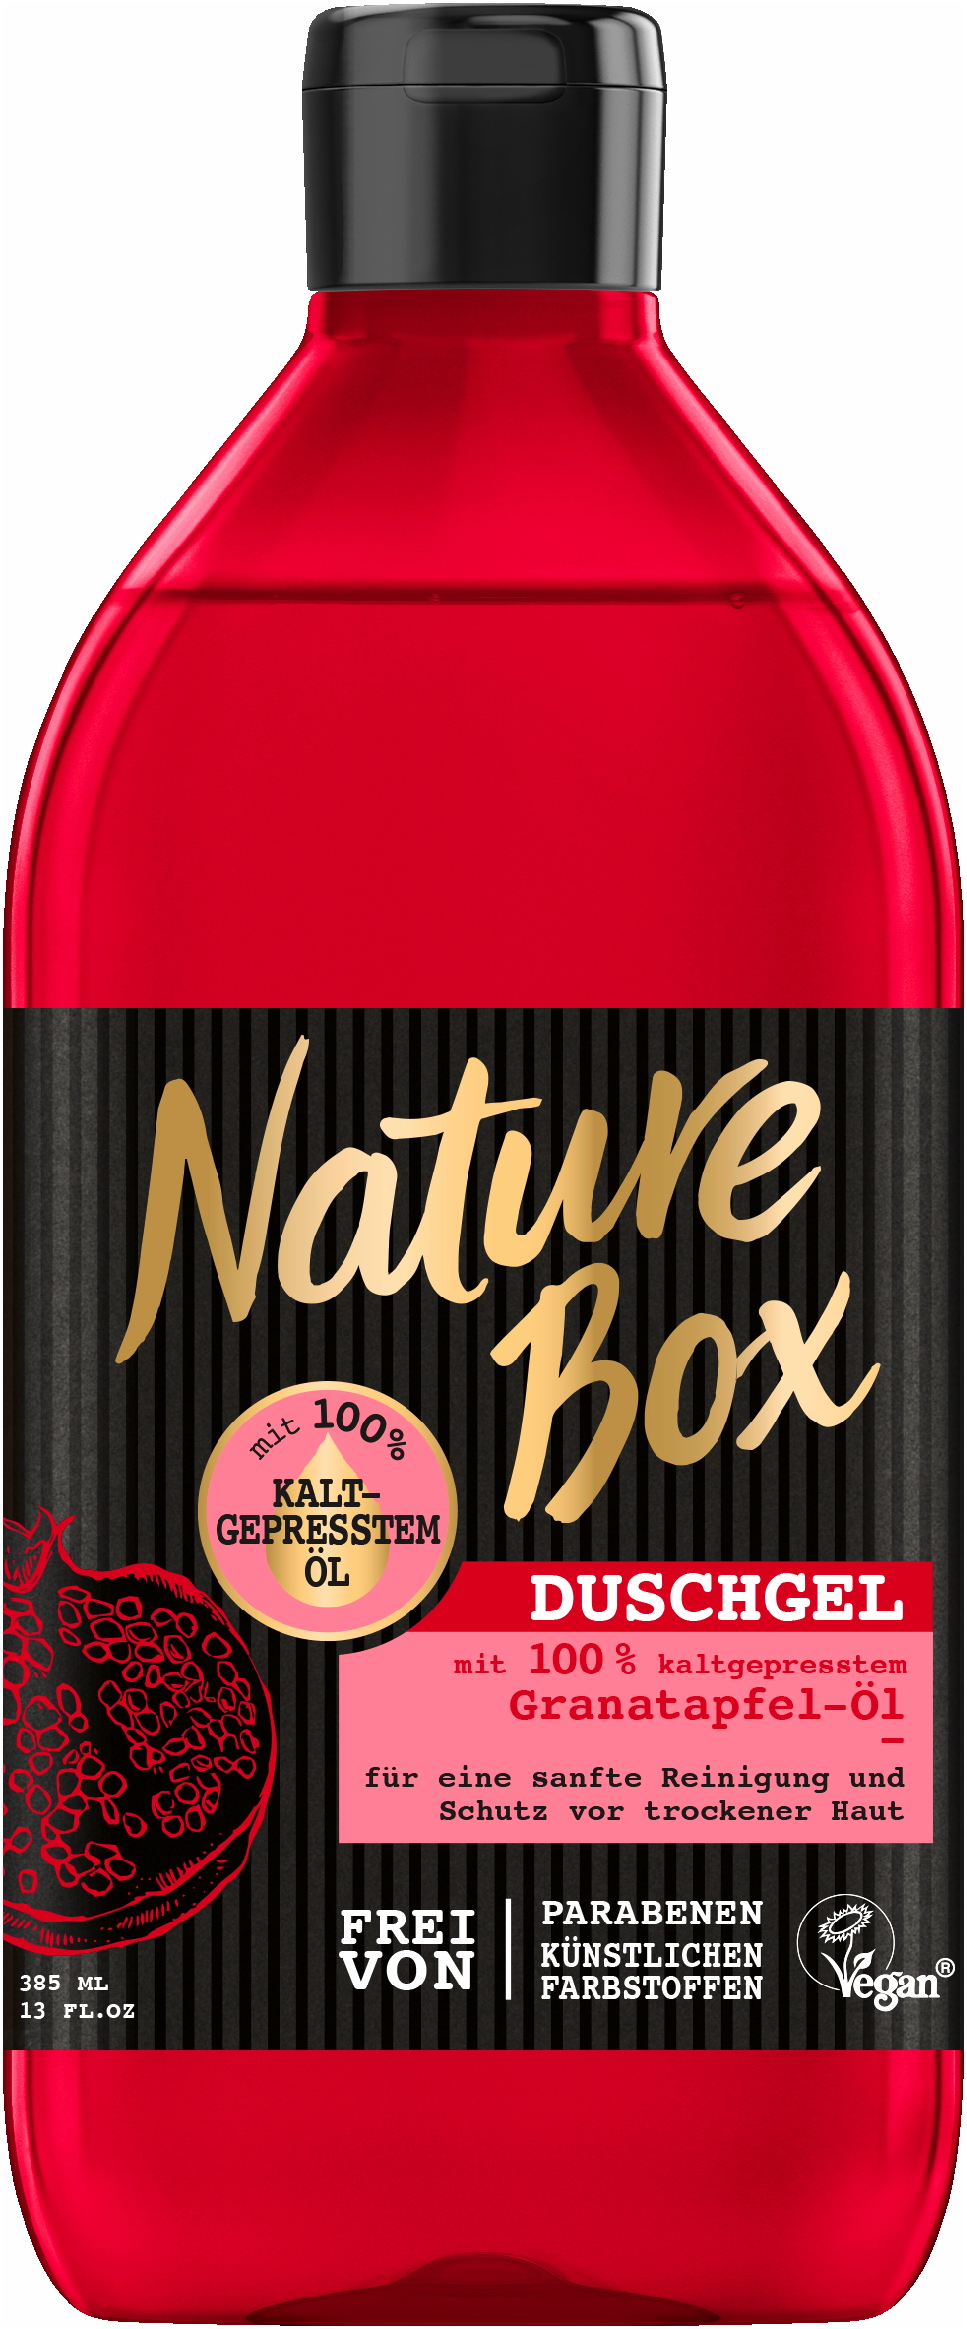 Nature Box Duschgel Granatapfel-Öl